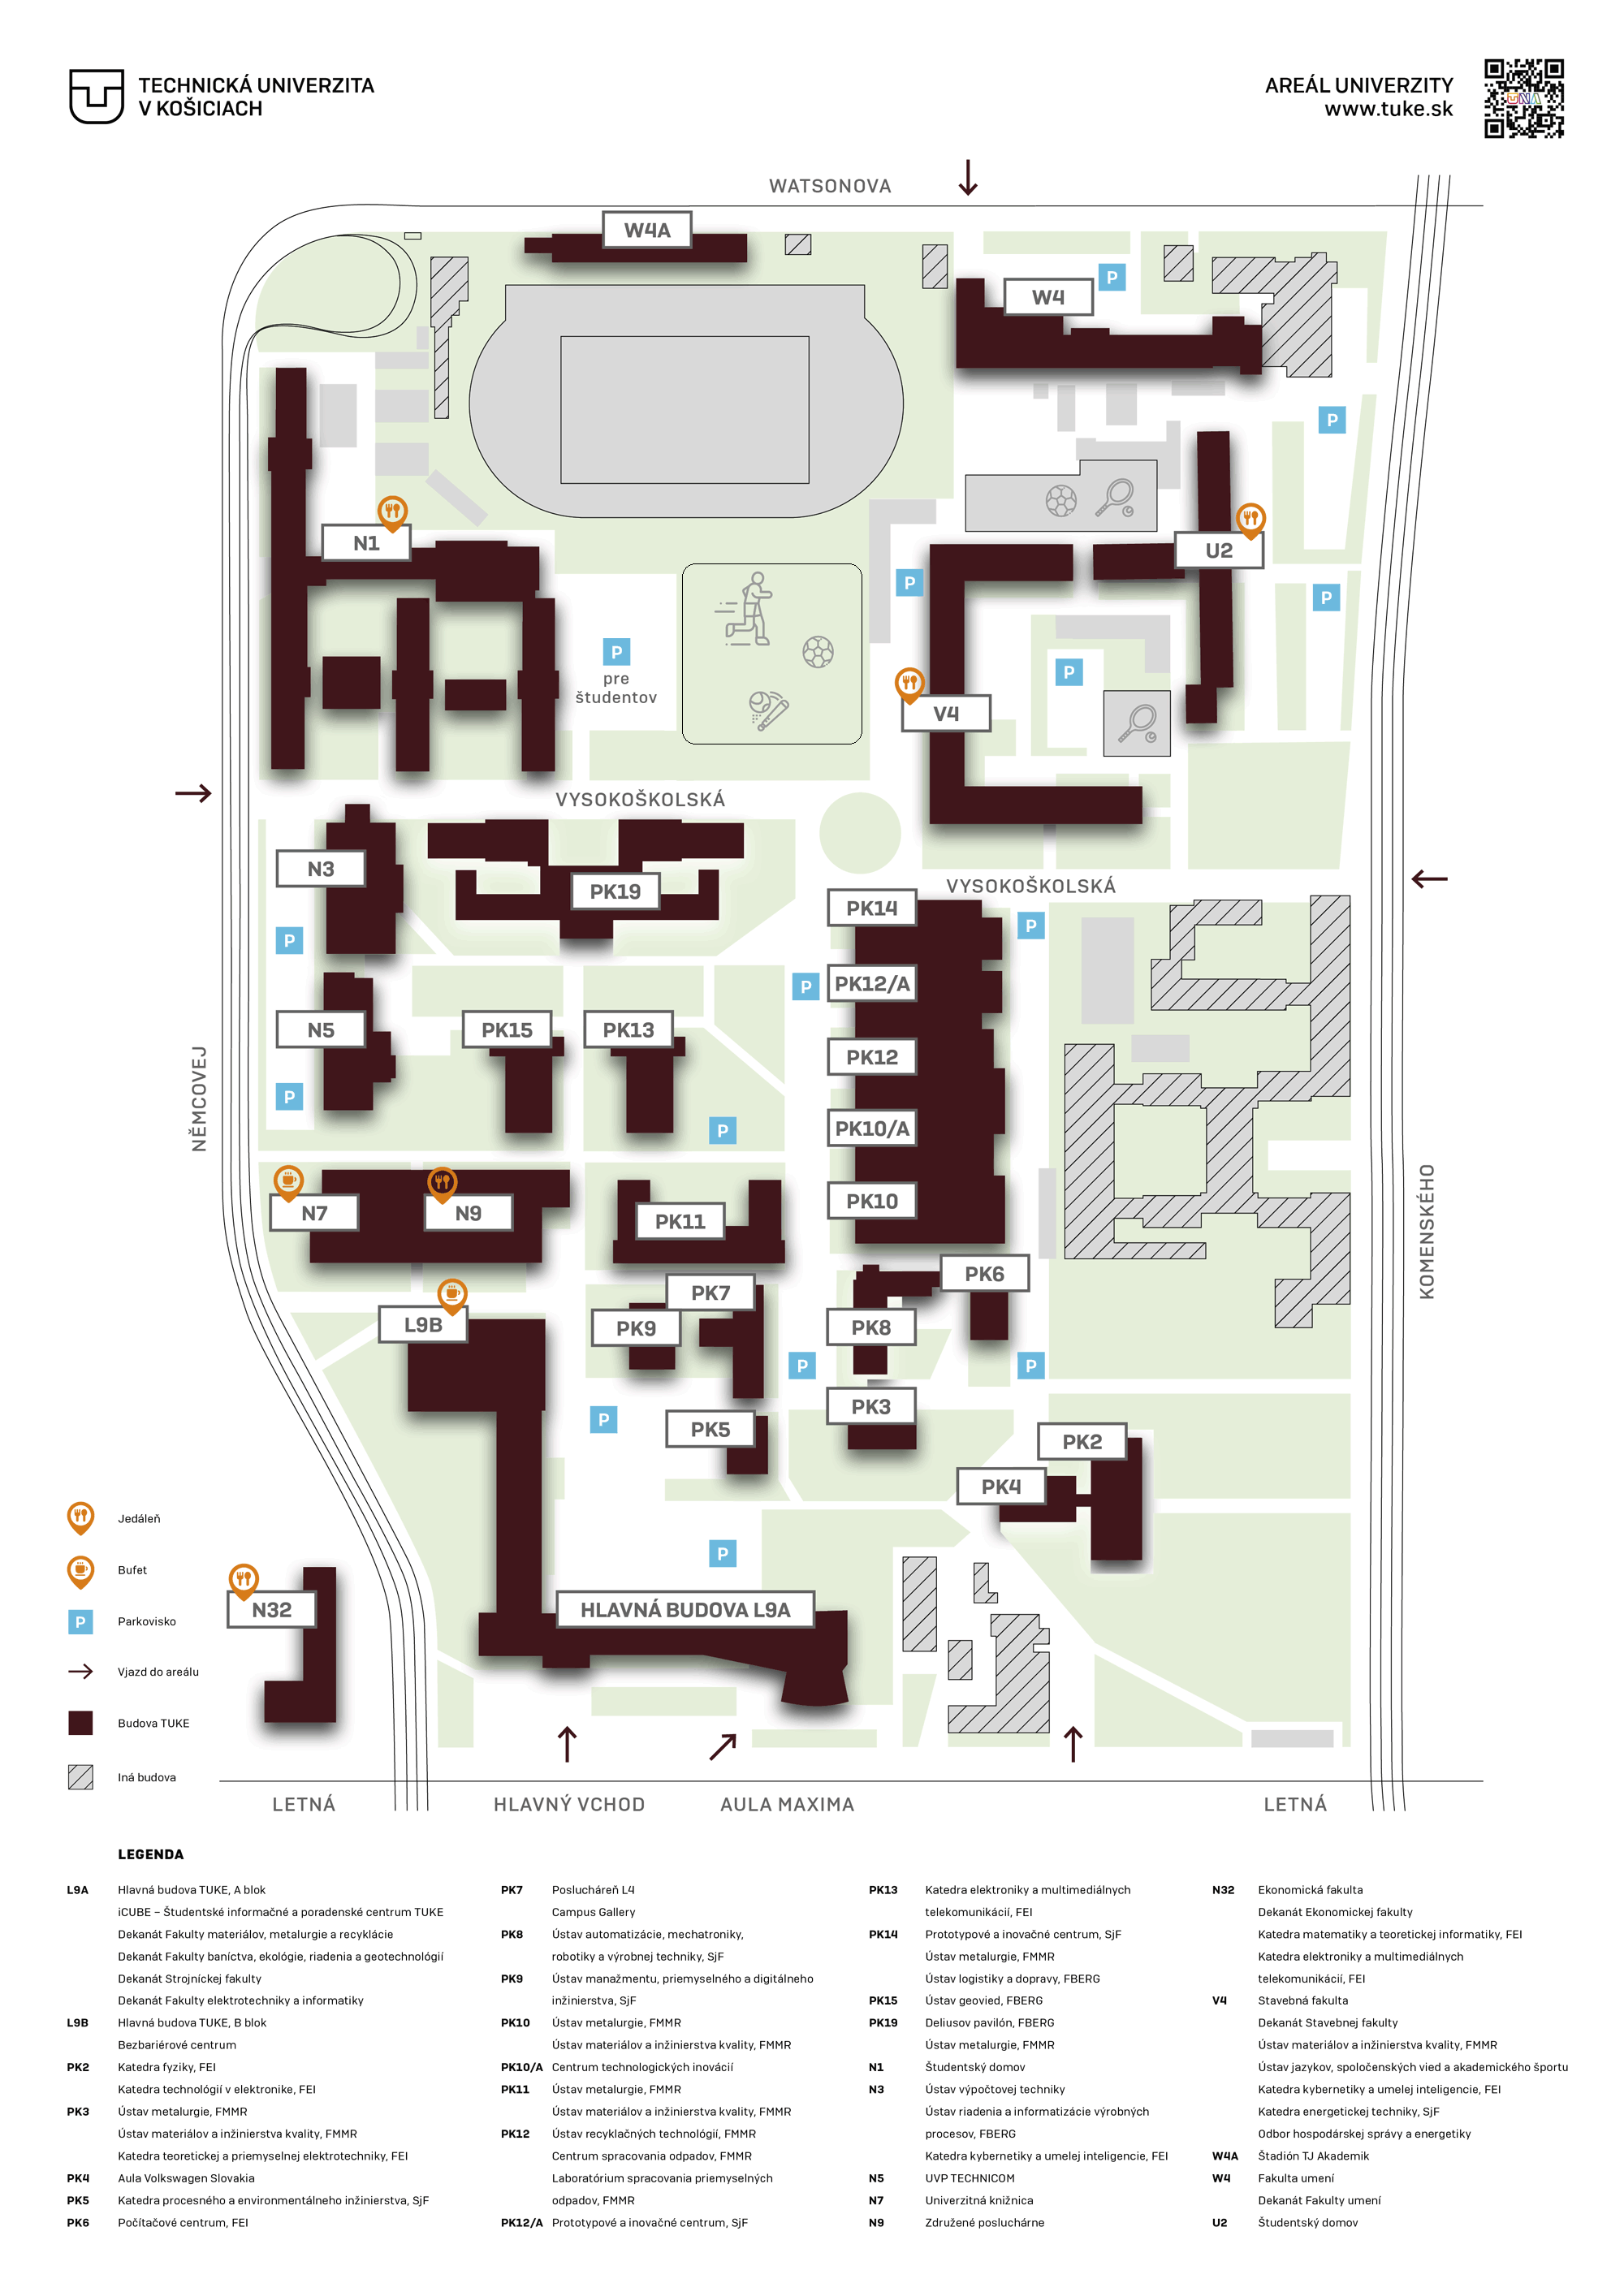 TUKE Campus Map